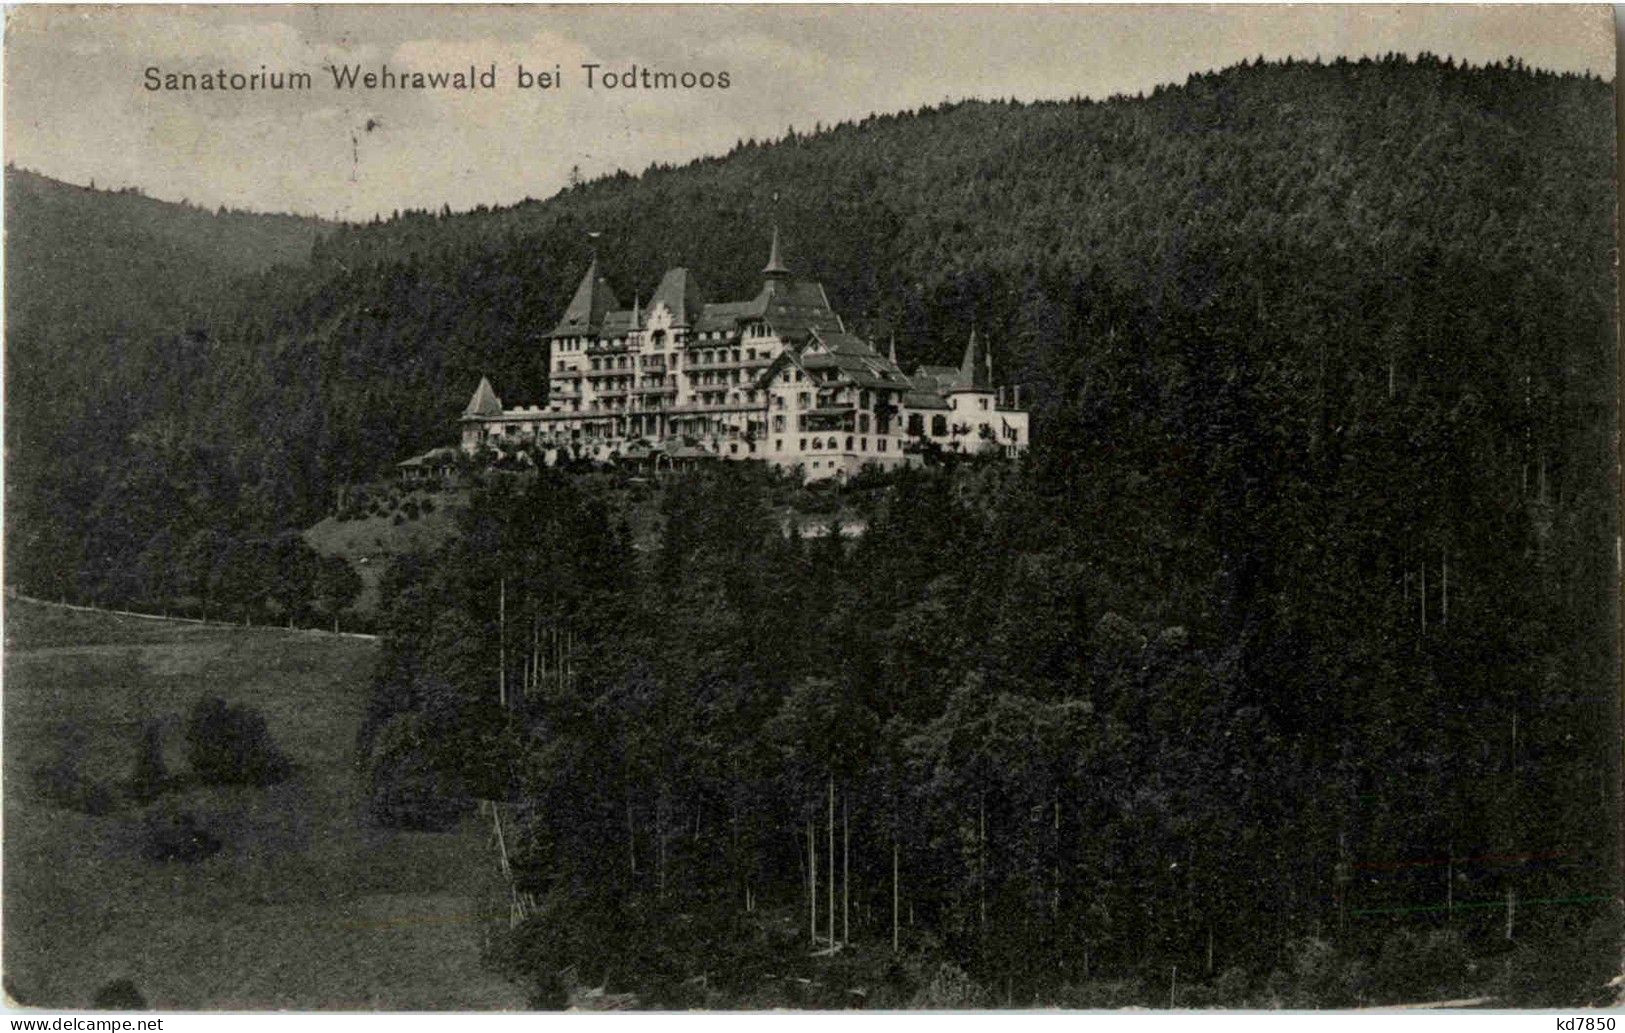 Todtmoos - Sanatorium Wehrawald - Todtmoos